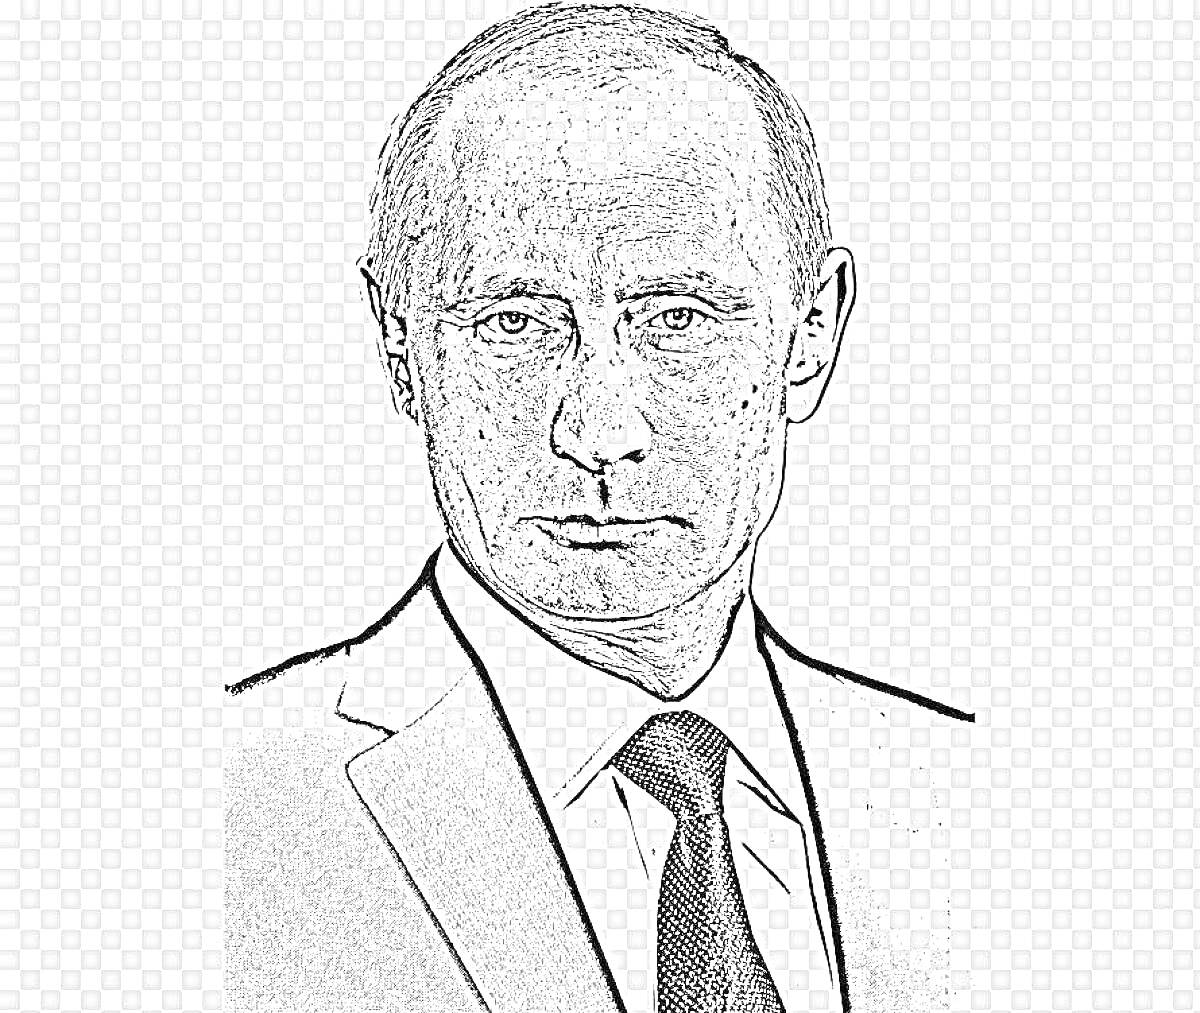 Раскраска Портрет мужчины в костюме и галстуке (линия рисунка)